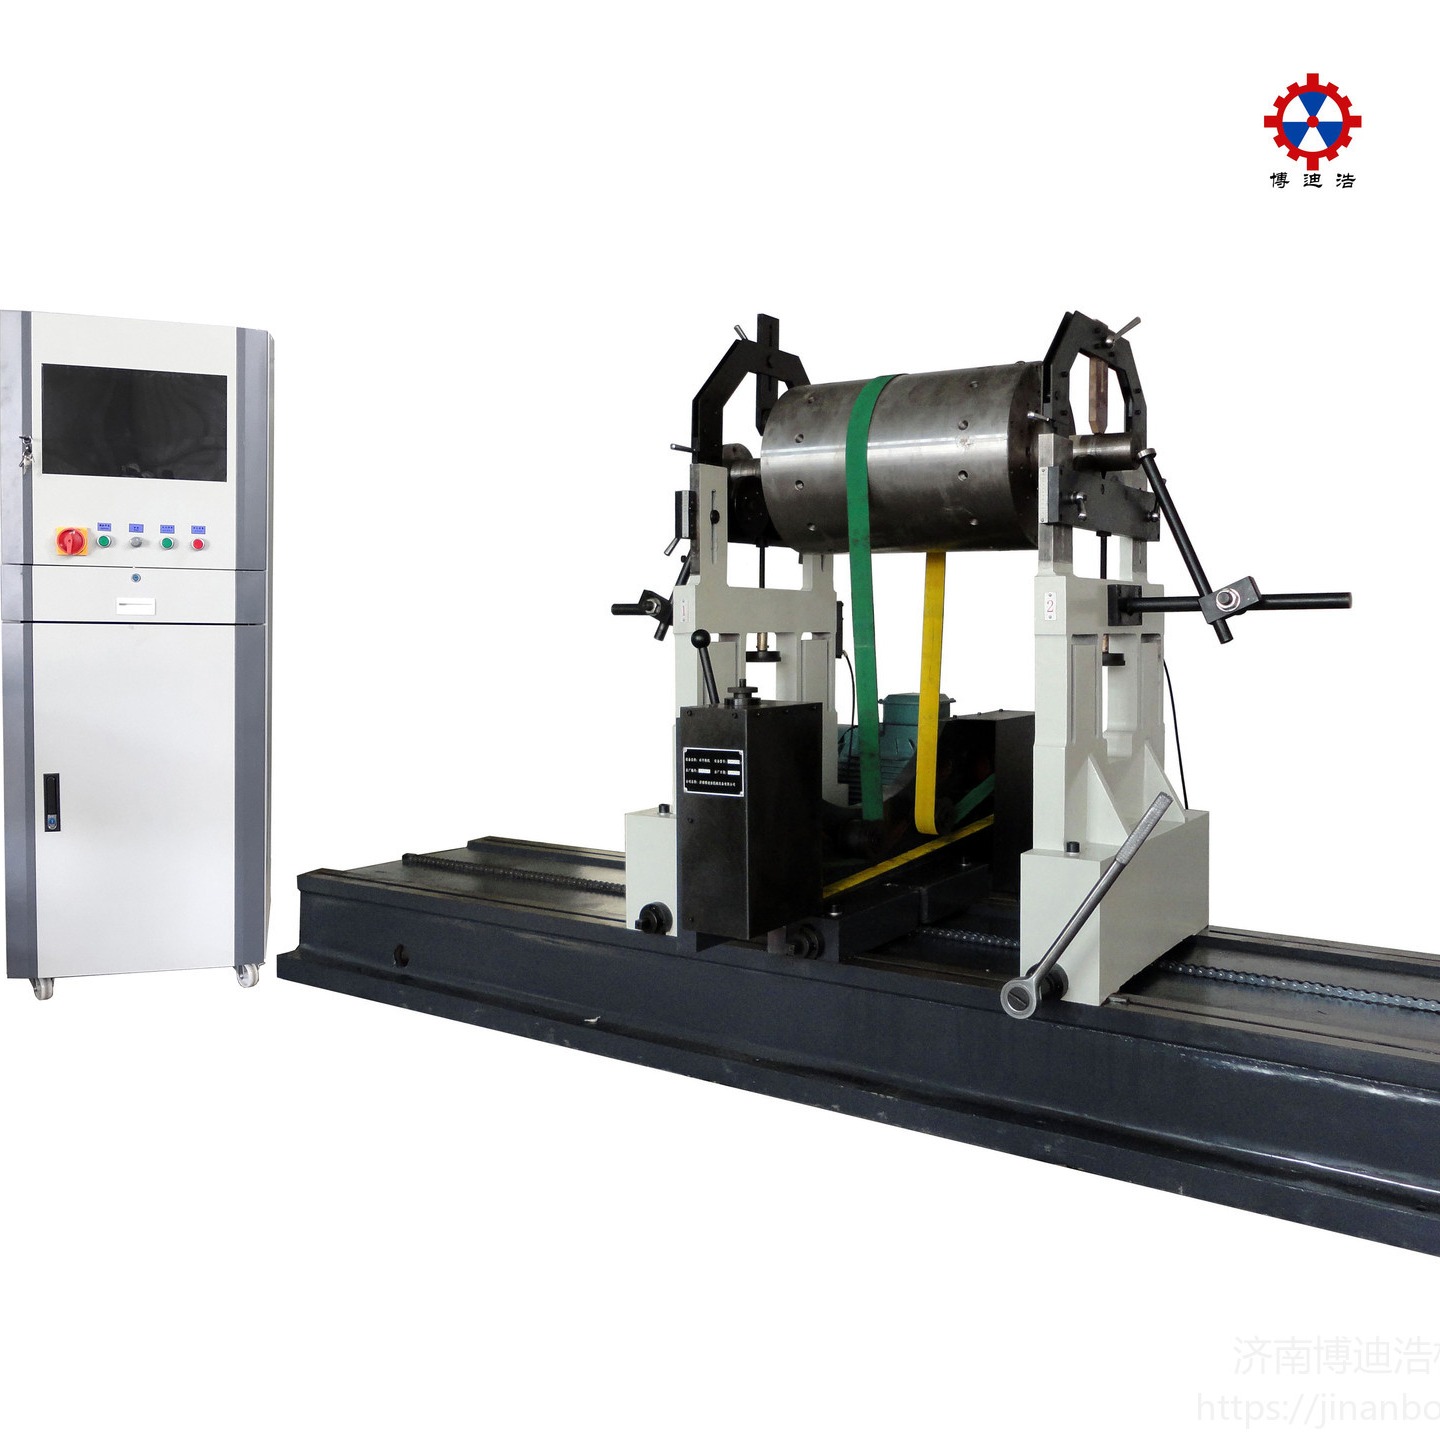 动平衡机 博迪浩专业供应YYQ-1600A型通用硬支承动平衡机 提供动平衡机测量系统